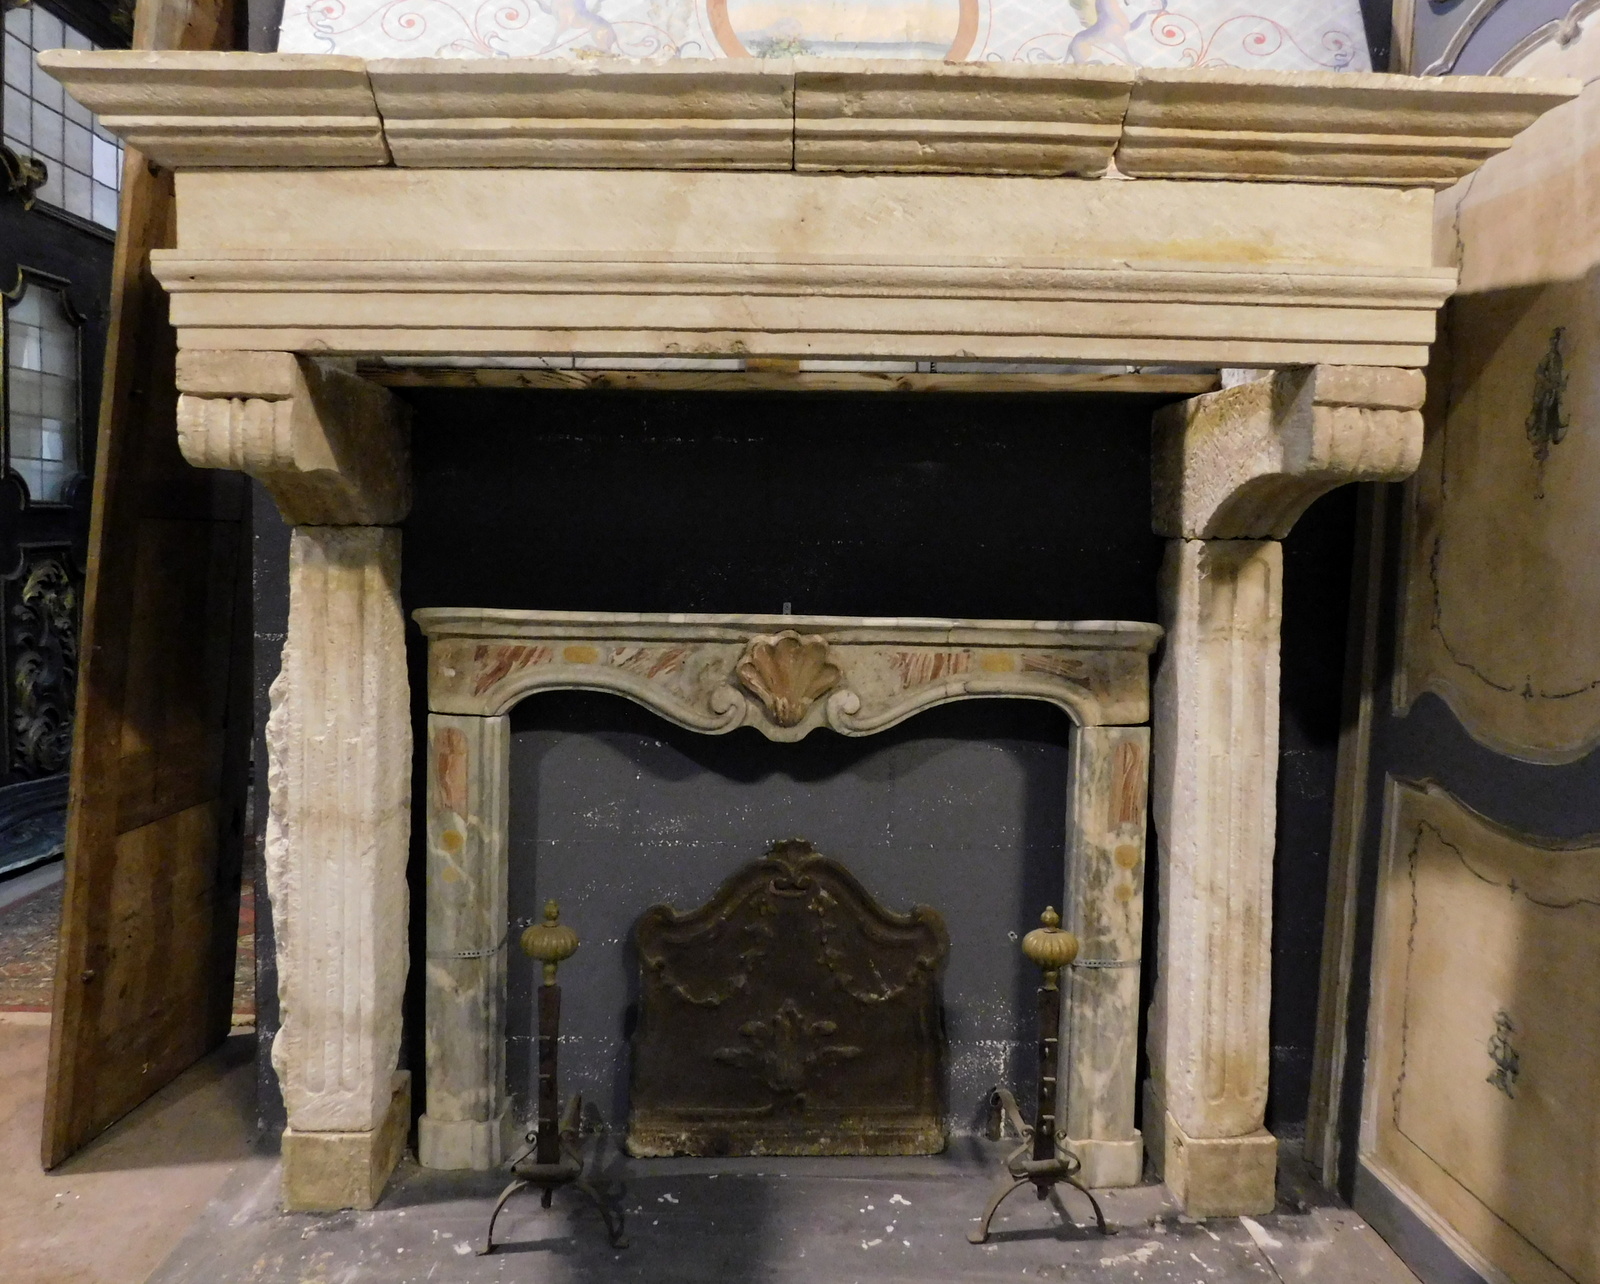 chp332 - stone fireplace, '500 /' 600 period, cm w 200 x h 184 x d. 77